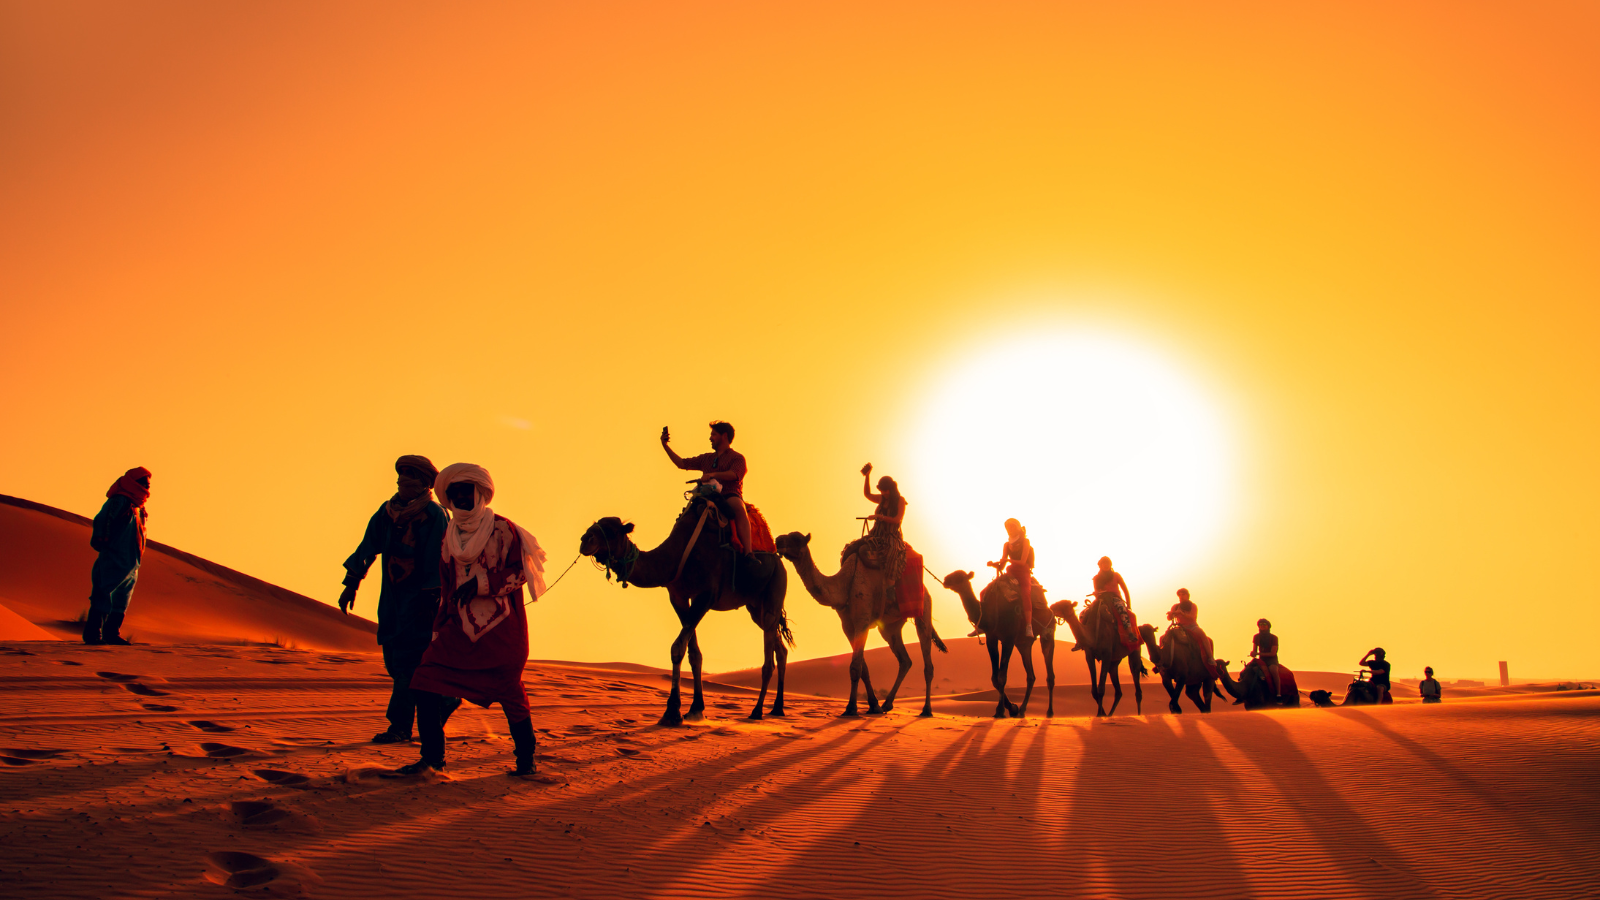 Караван называется. Верблюды Караван. Караван верблюдов в пустыне. Караван верблюдов на закате. Пустыня закат Караван.